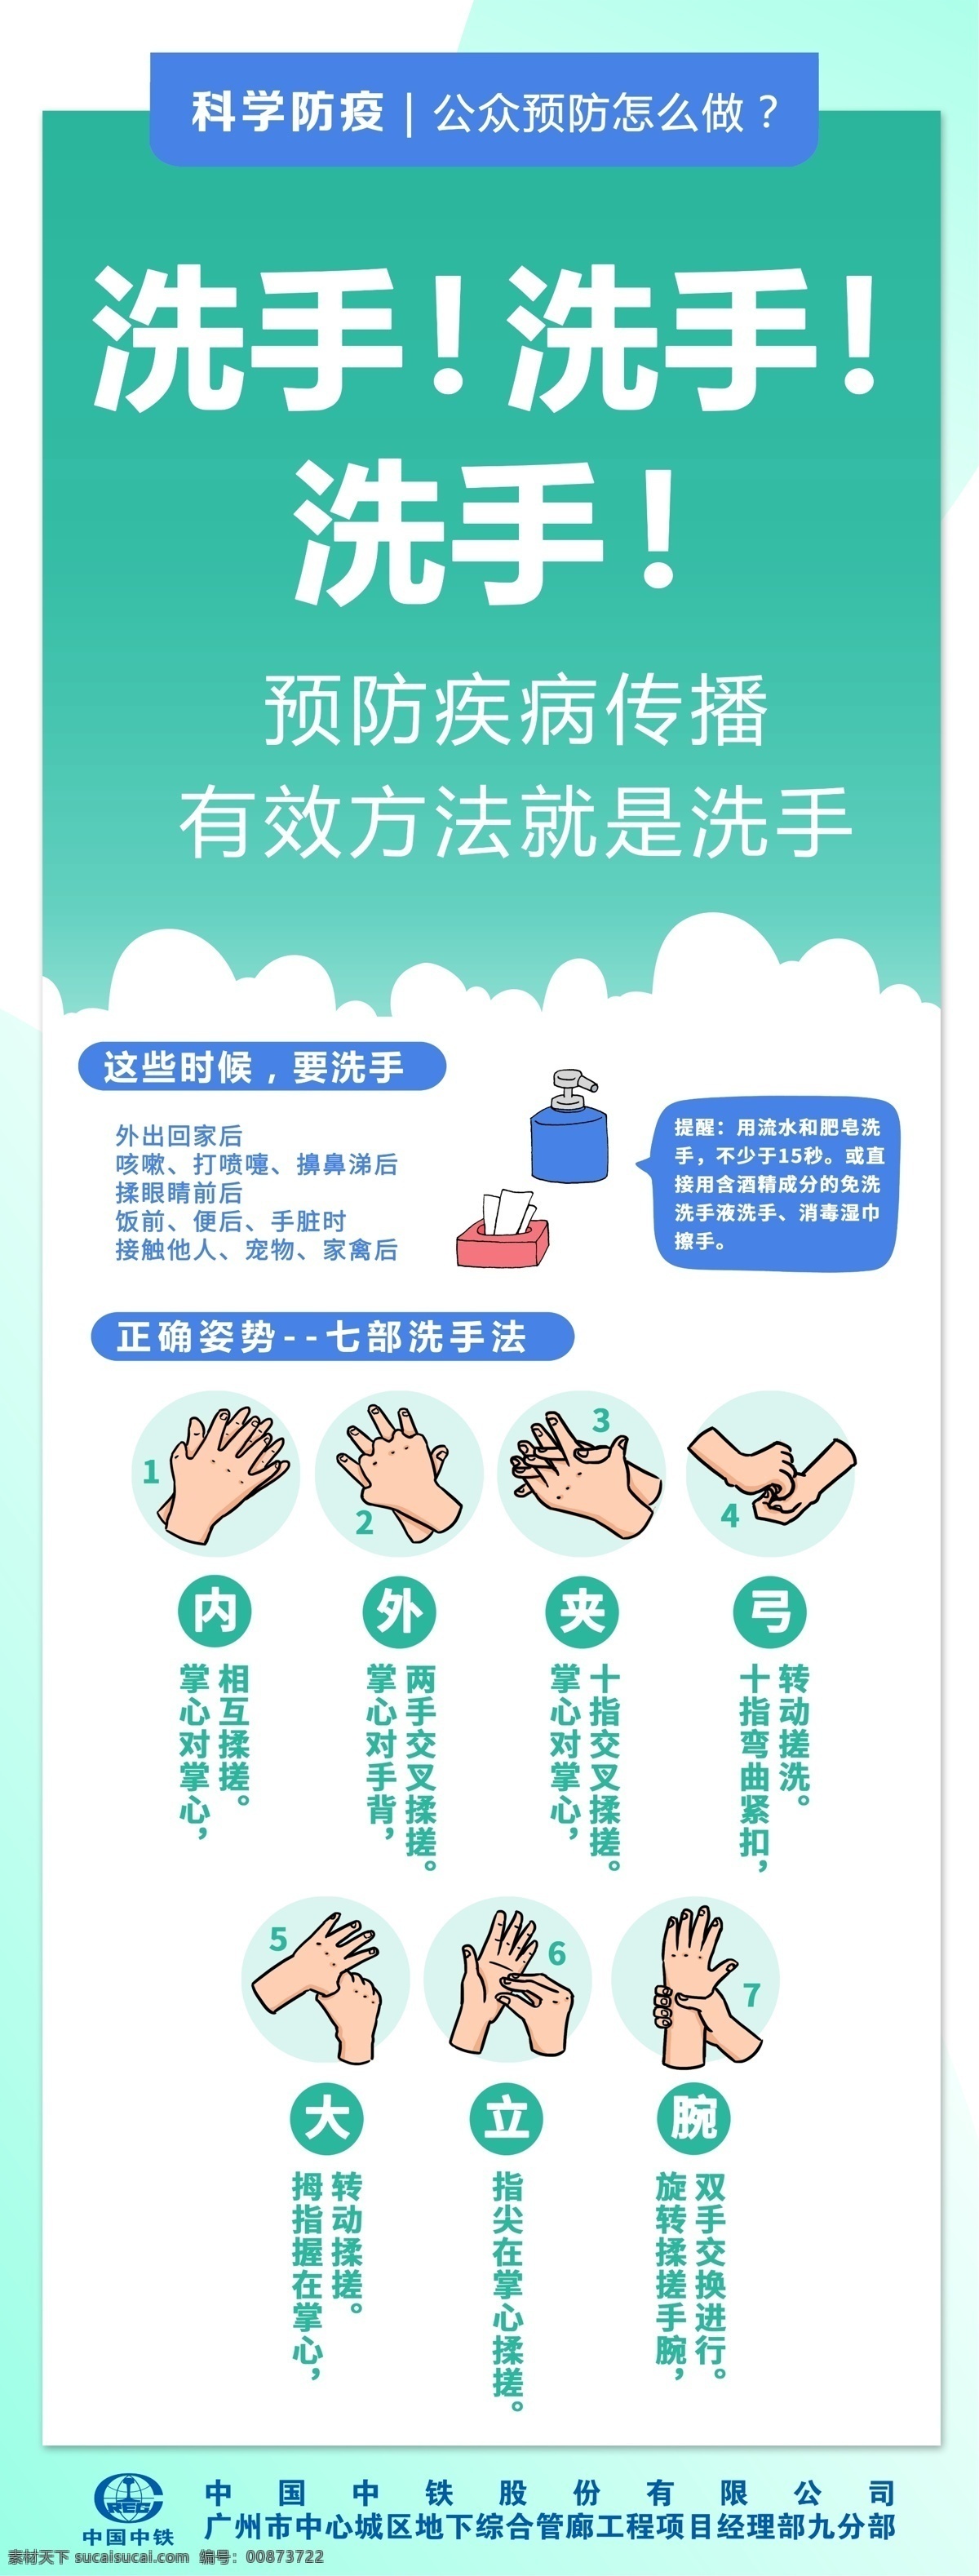 洗手展架 洗手海报 洗手 七步洗手 展架 防疫 疫情 广告